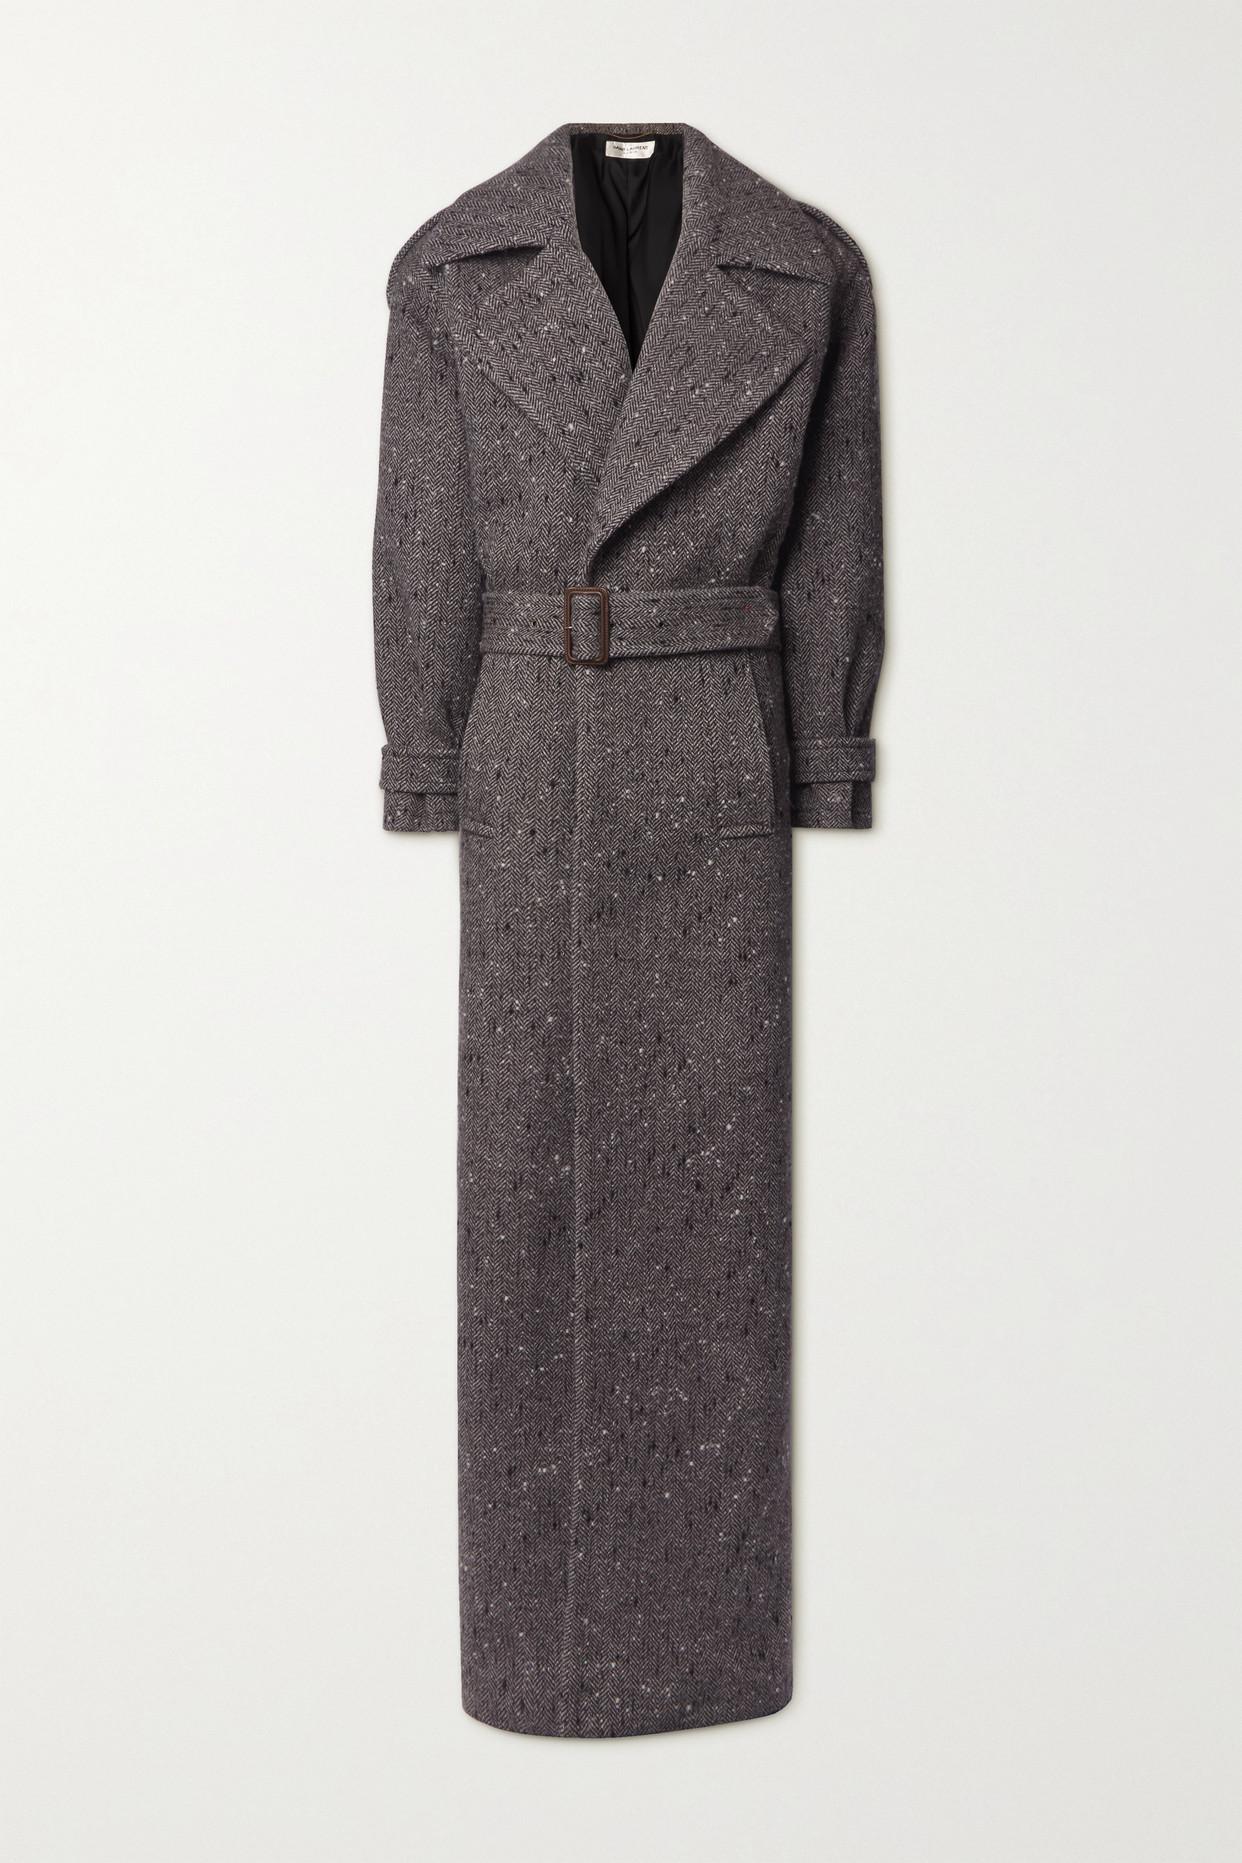 Long coat in wool, Saint Laurent